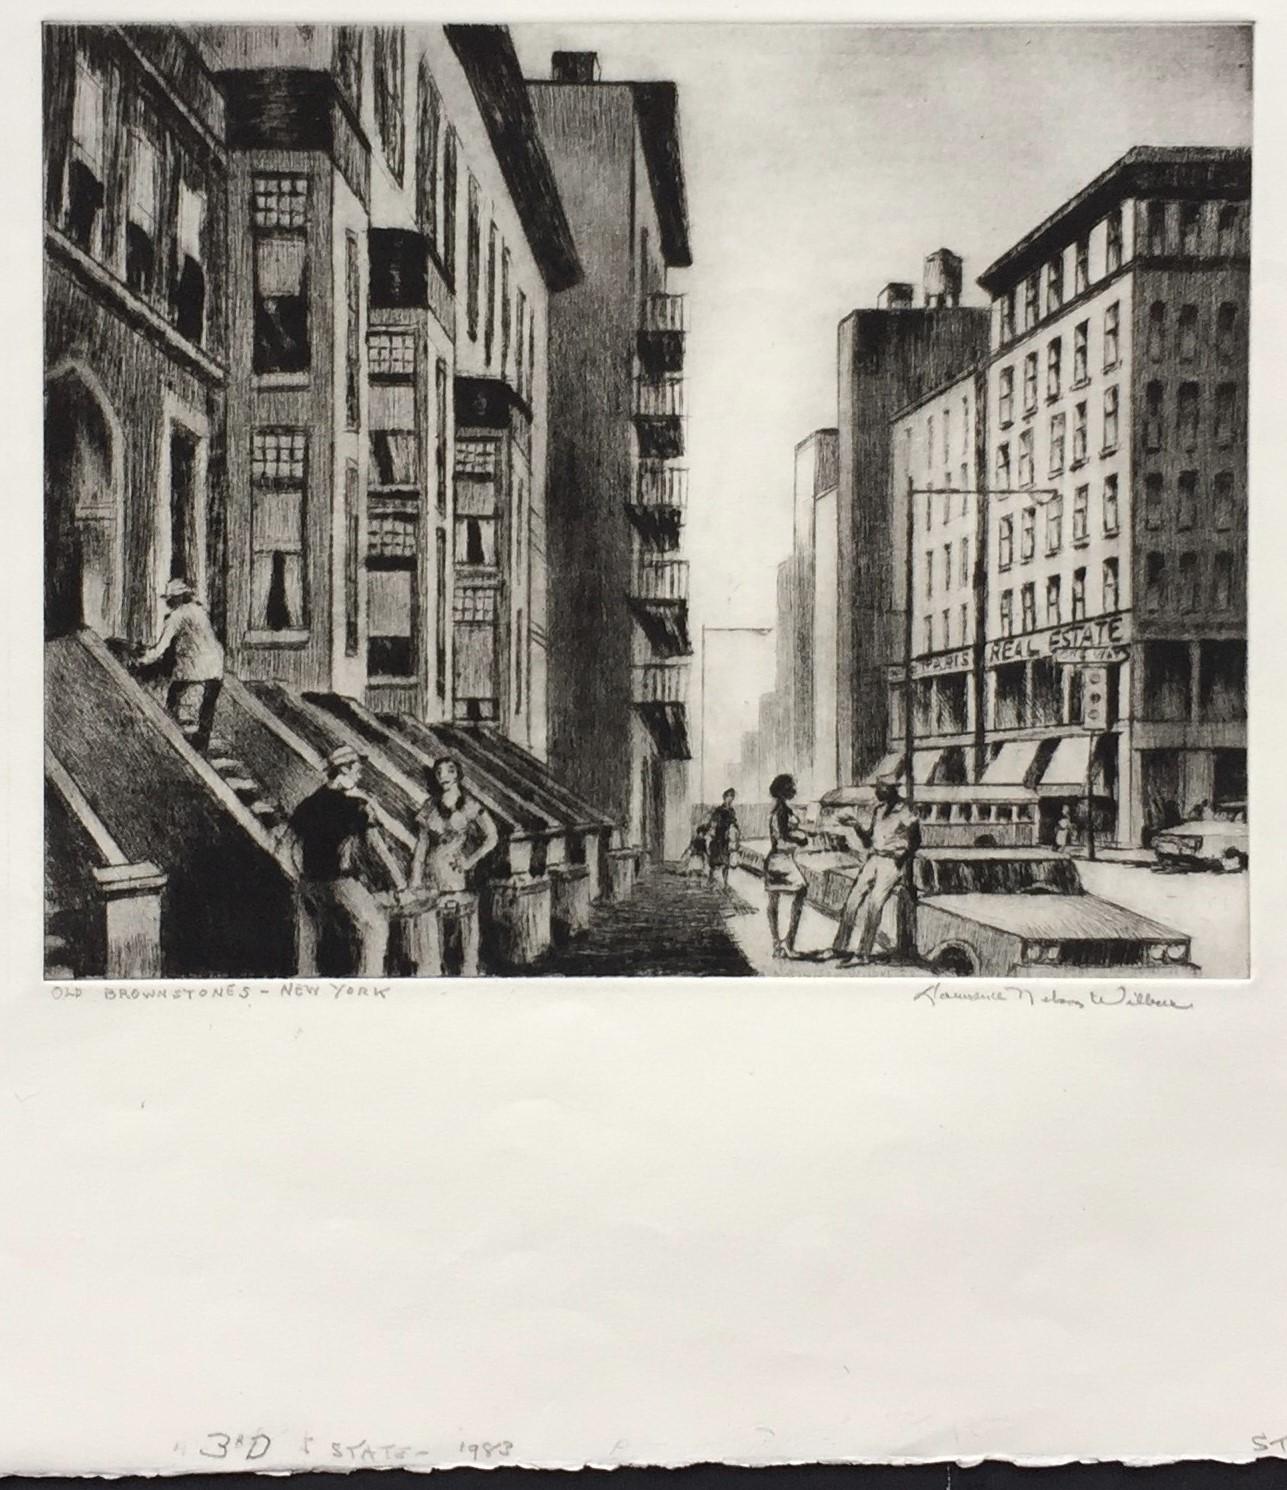 Old Brownstones -- New York - Print by Lawrence Wilbur